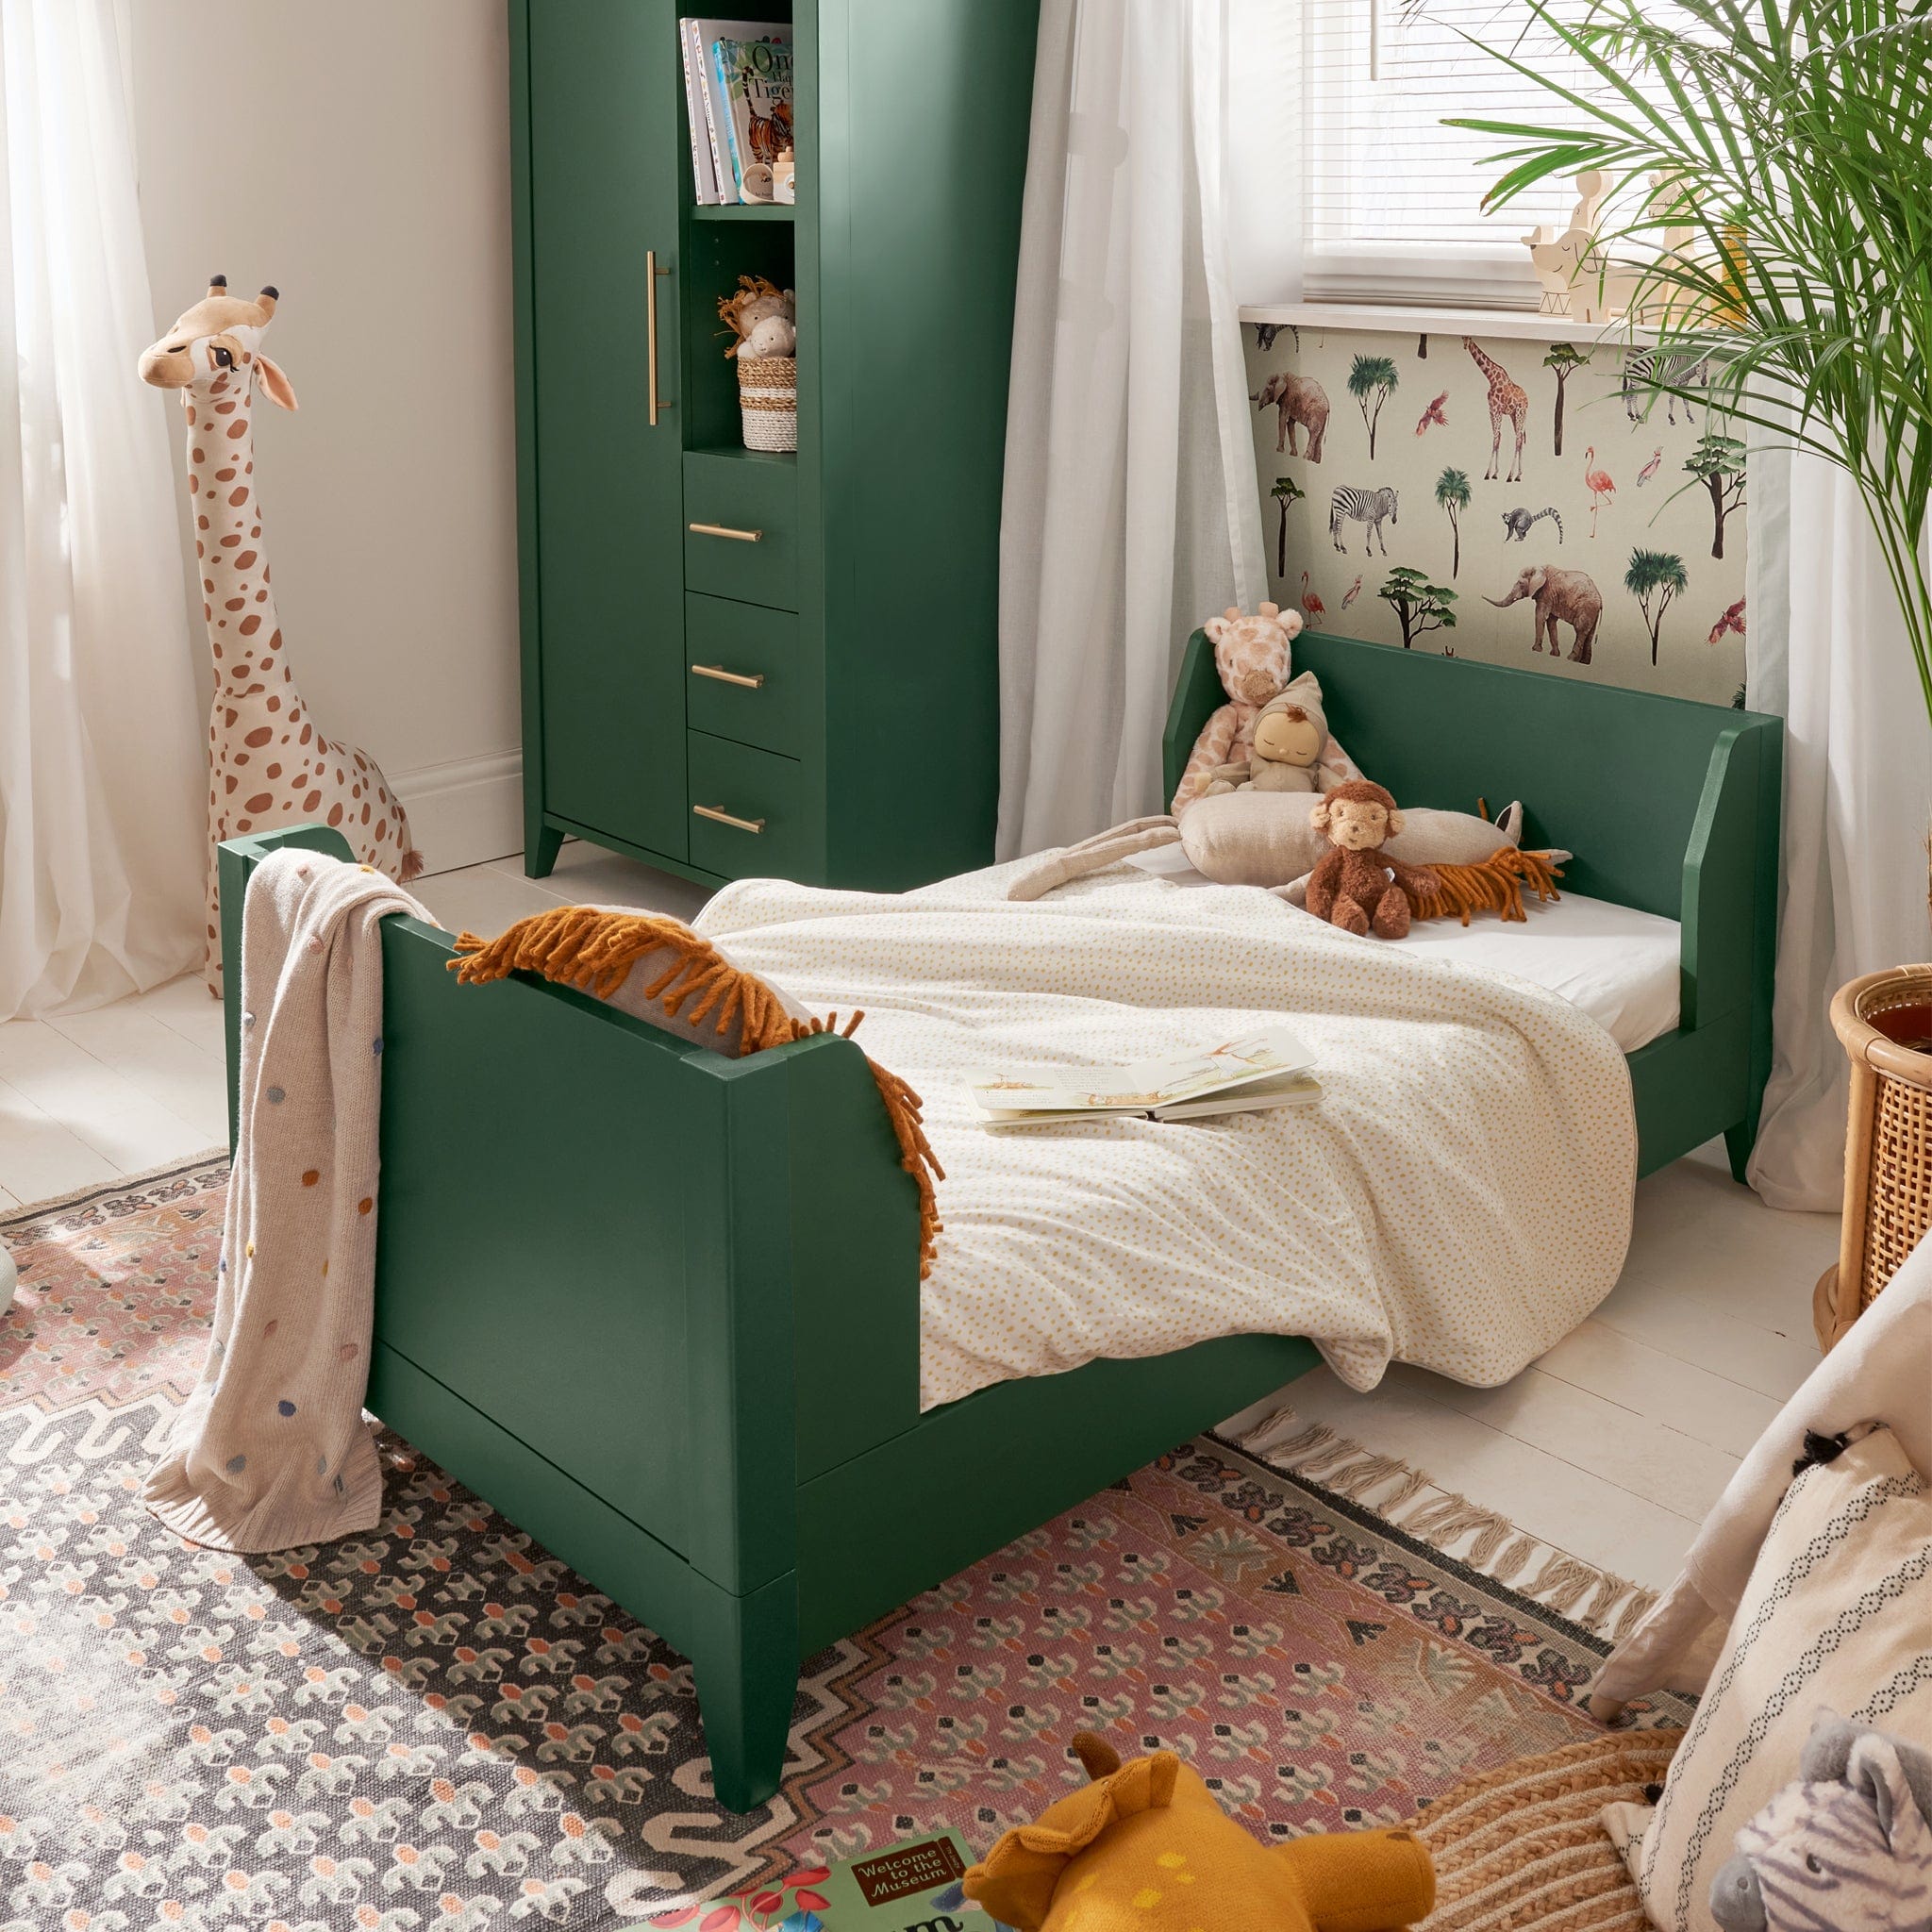 Mamas & Papas cot bed room sets Mamas & Papas Melfi 2 Piece Cotbed Roomset Green